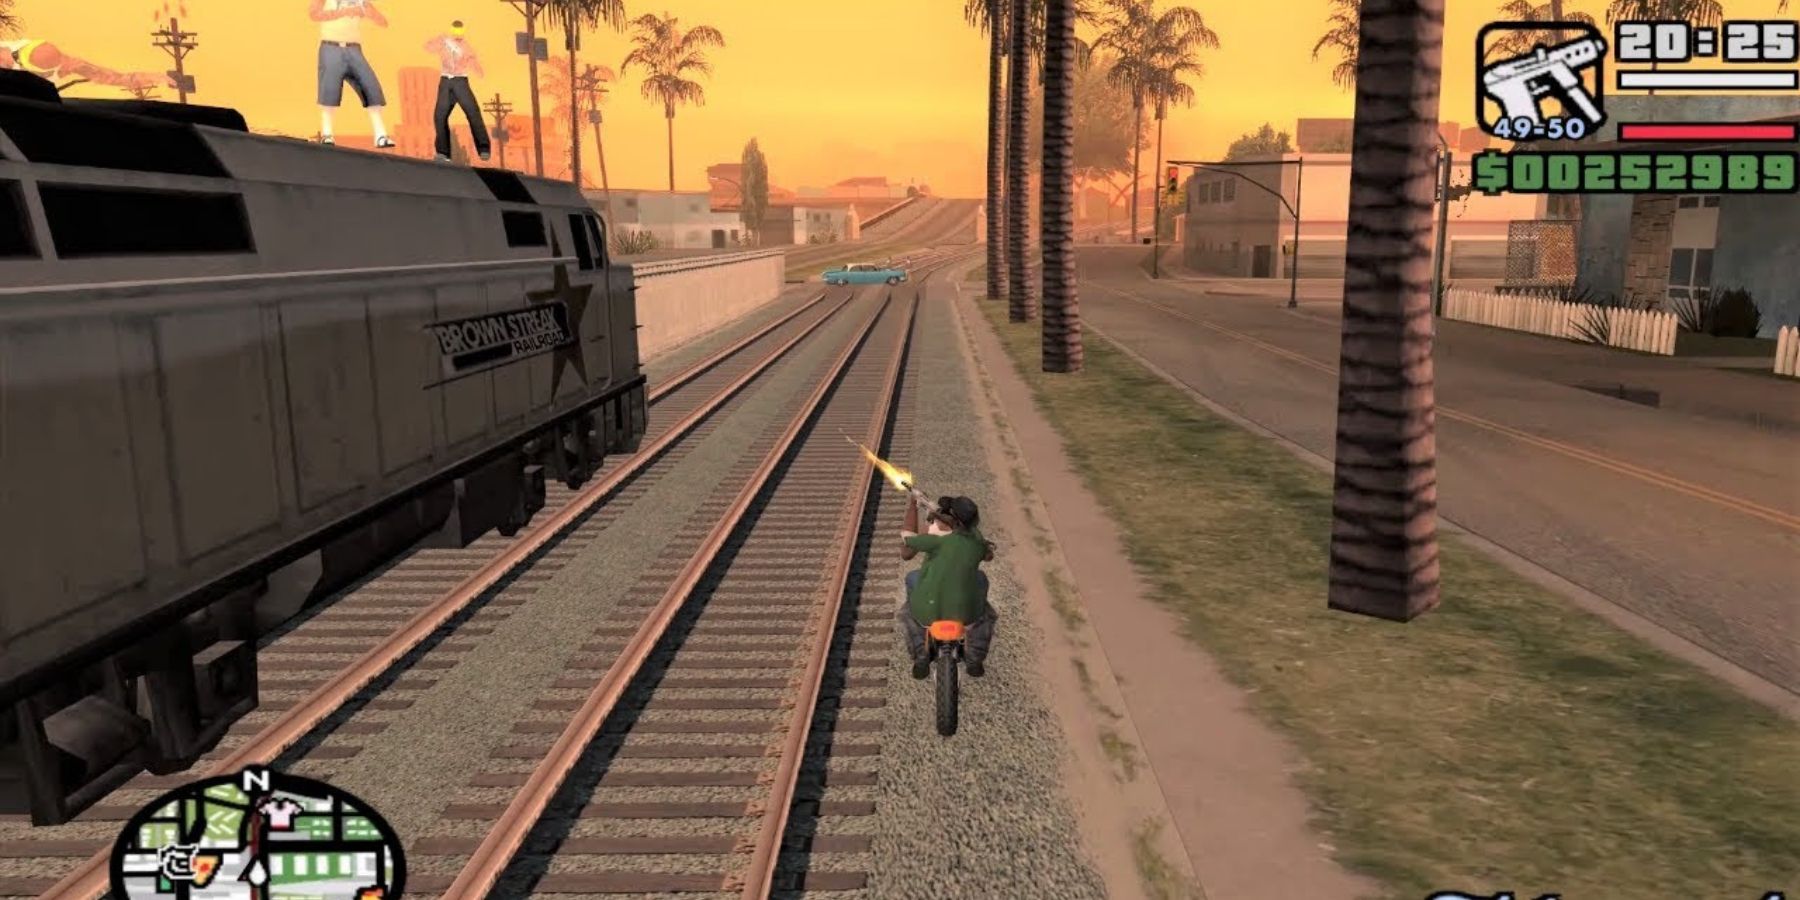 Big Smoke and CJ chase a train on a bike